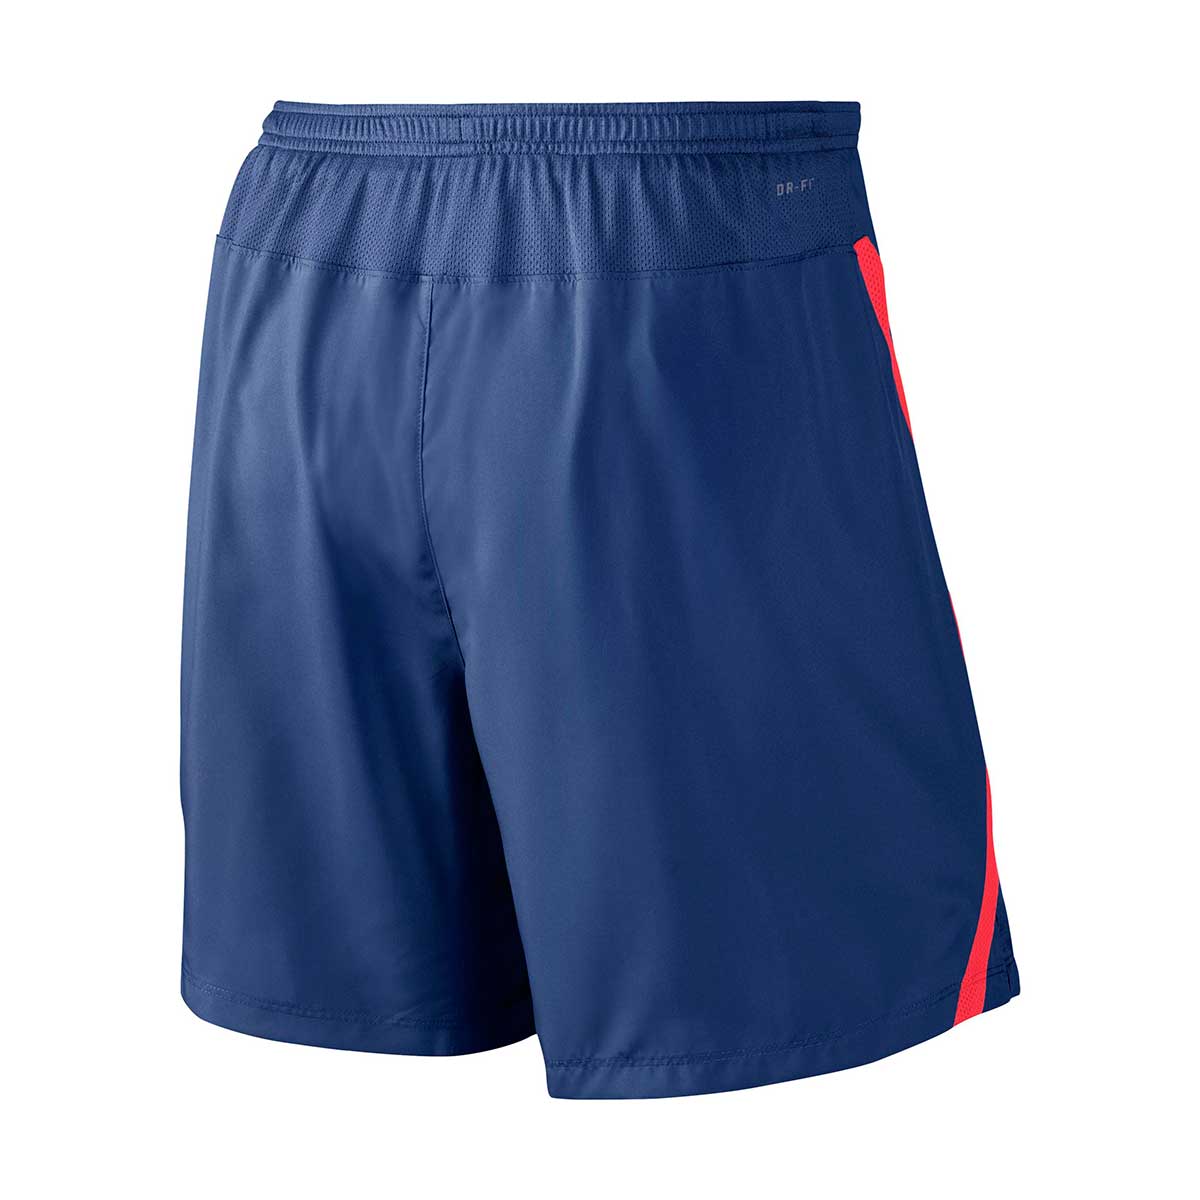 Buy Nike Men's Challenger Running Shorts (Fluorescent Orange) Online